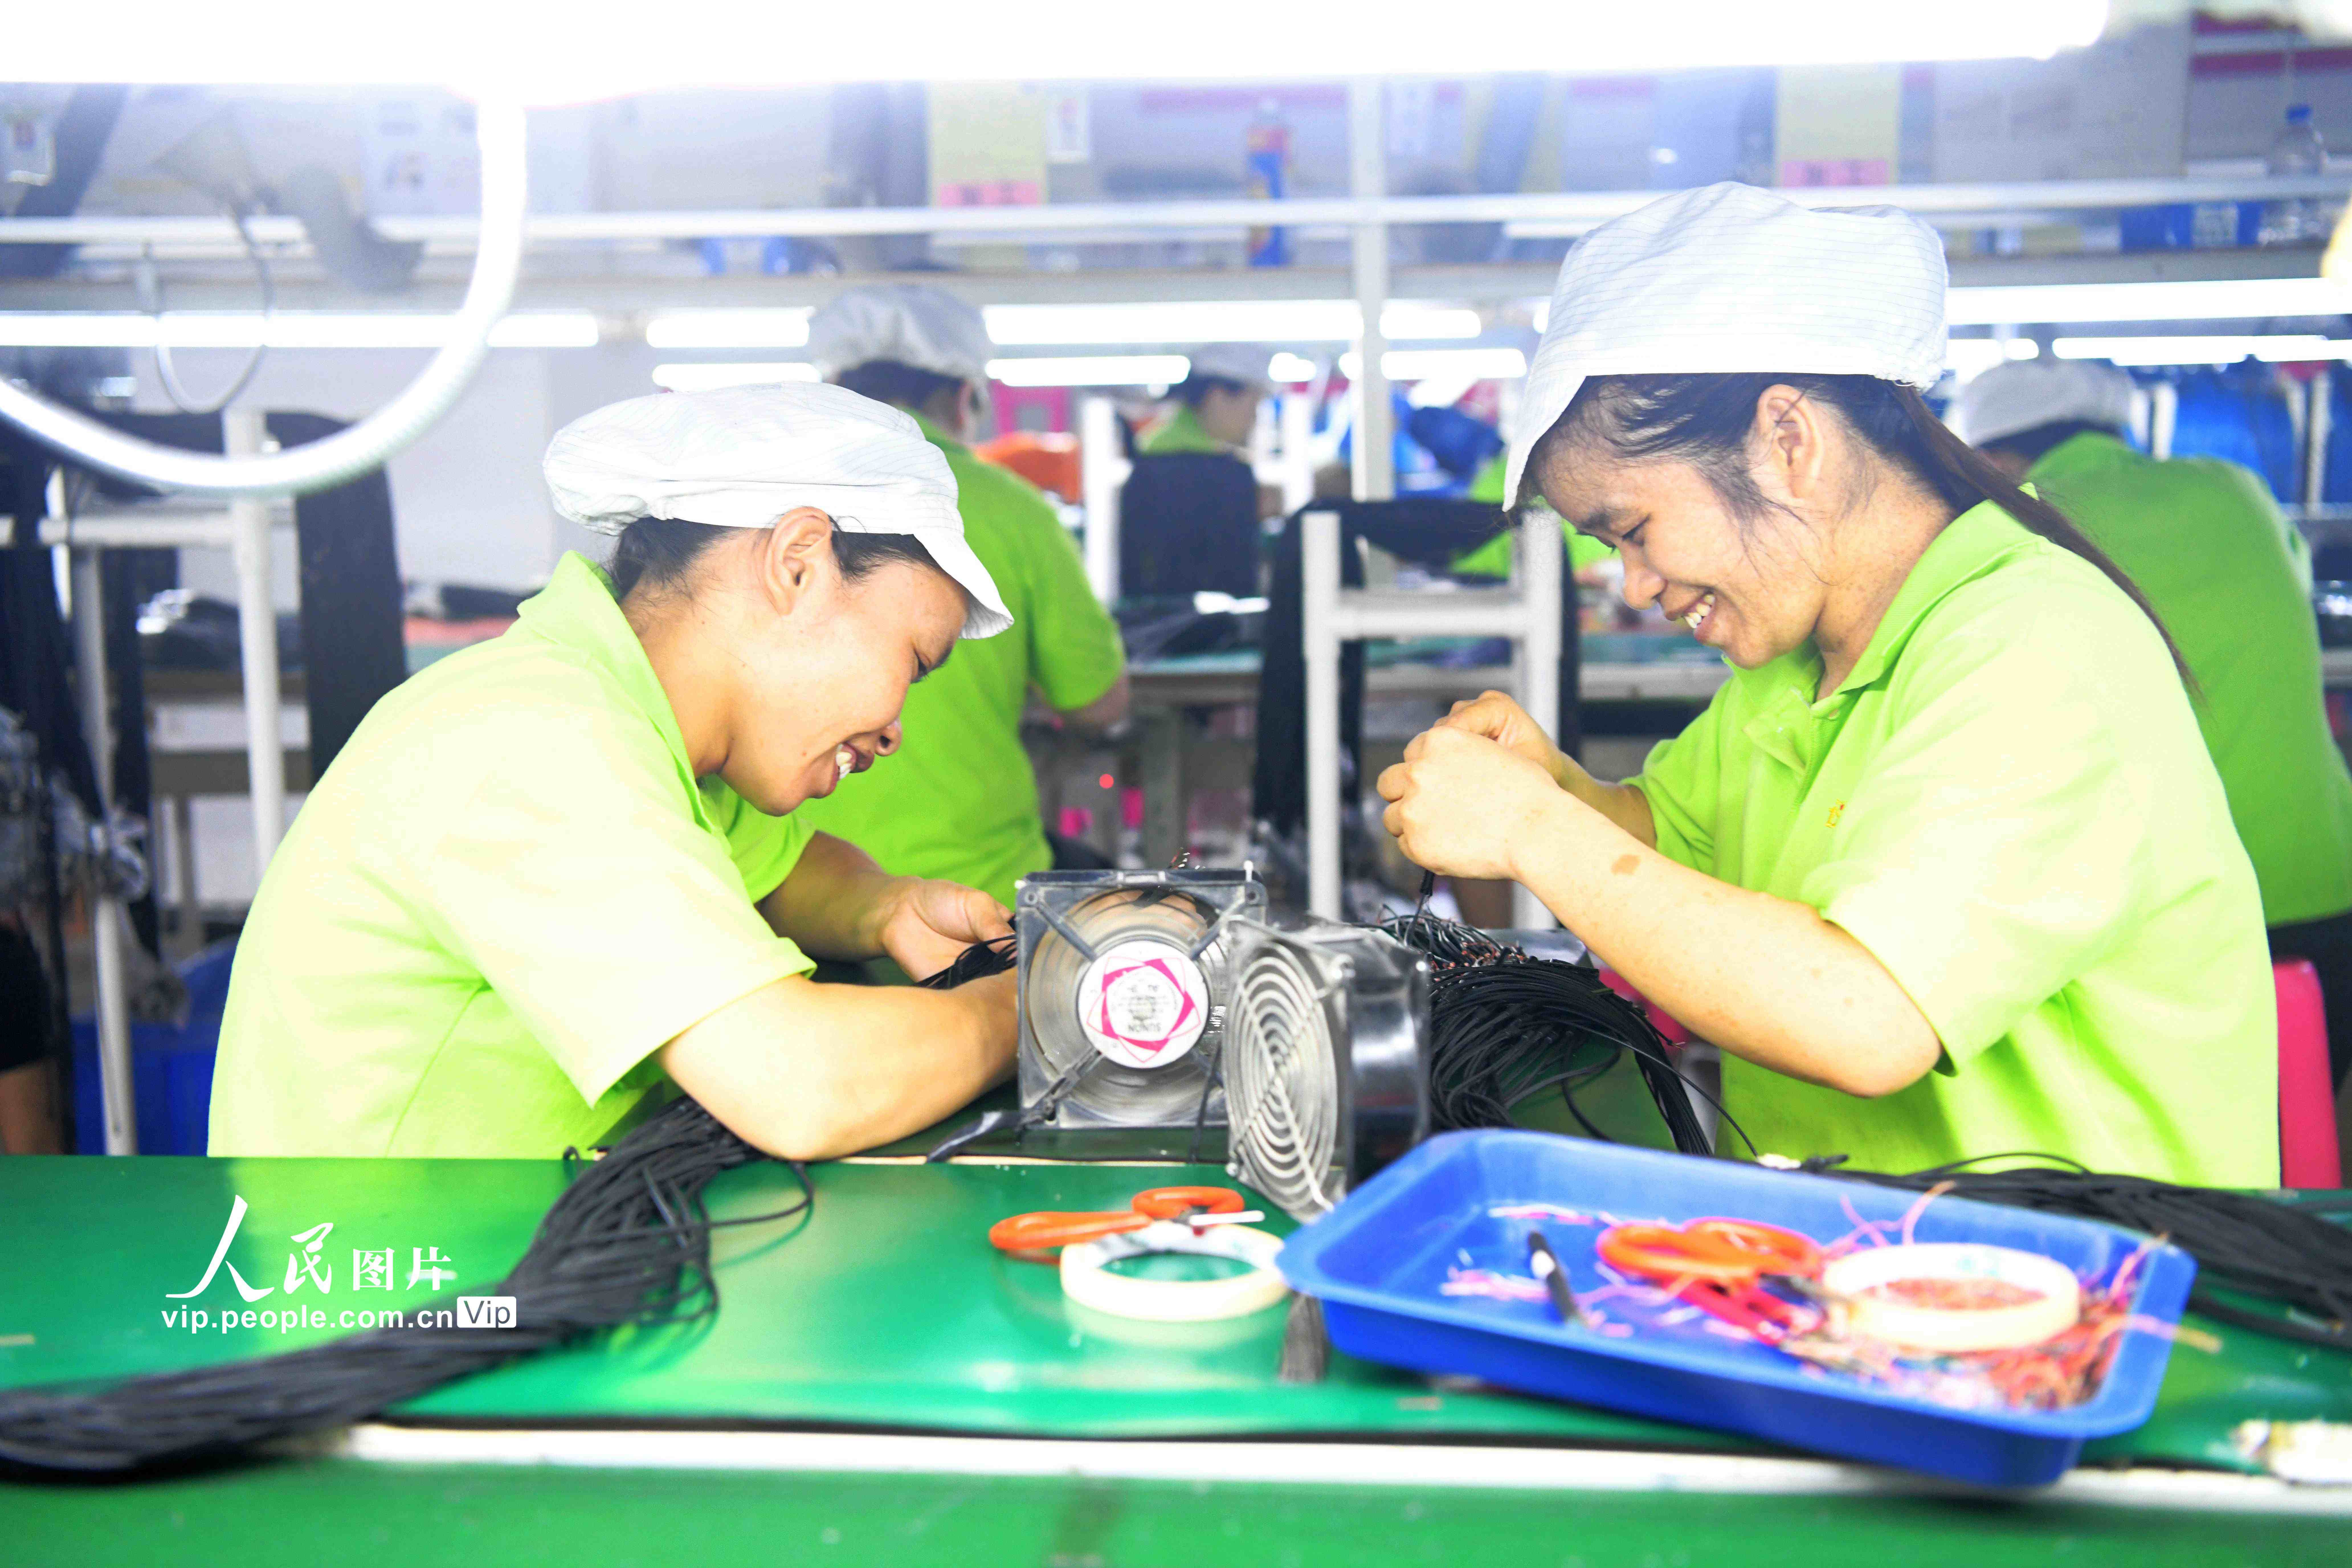 幾位貧困婦女正在“仫佬家園”裡一家電子廠的“巾幗扶貧車間”務工。